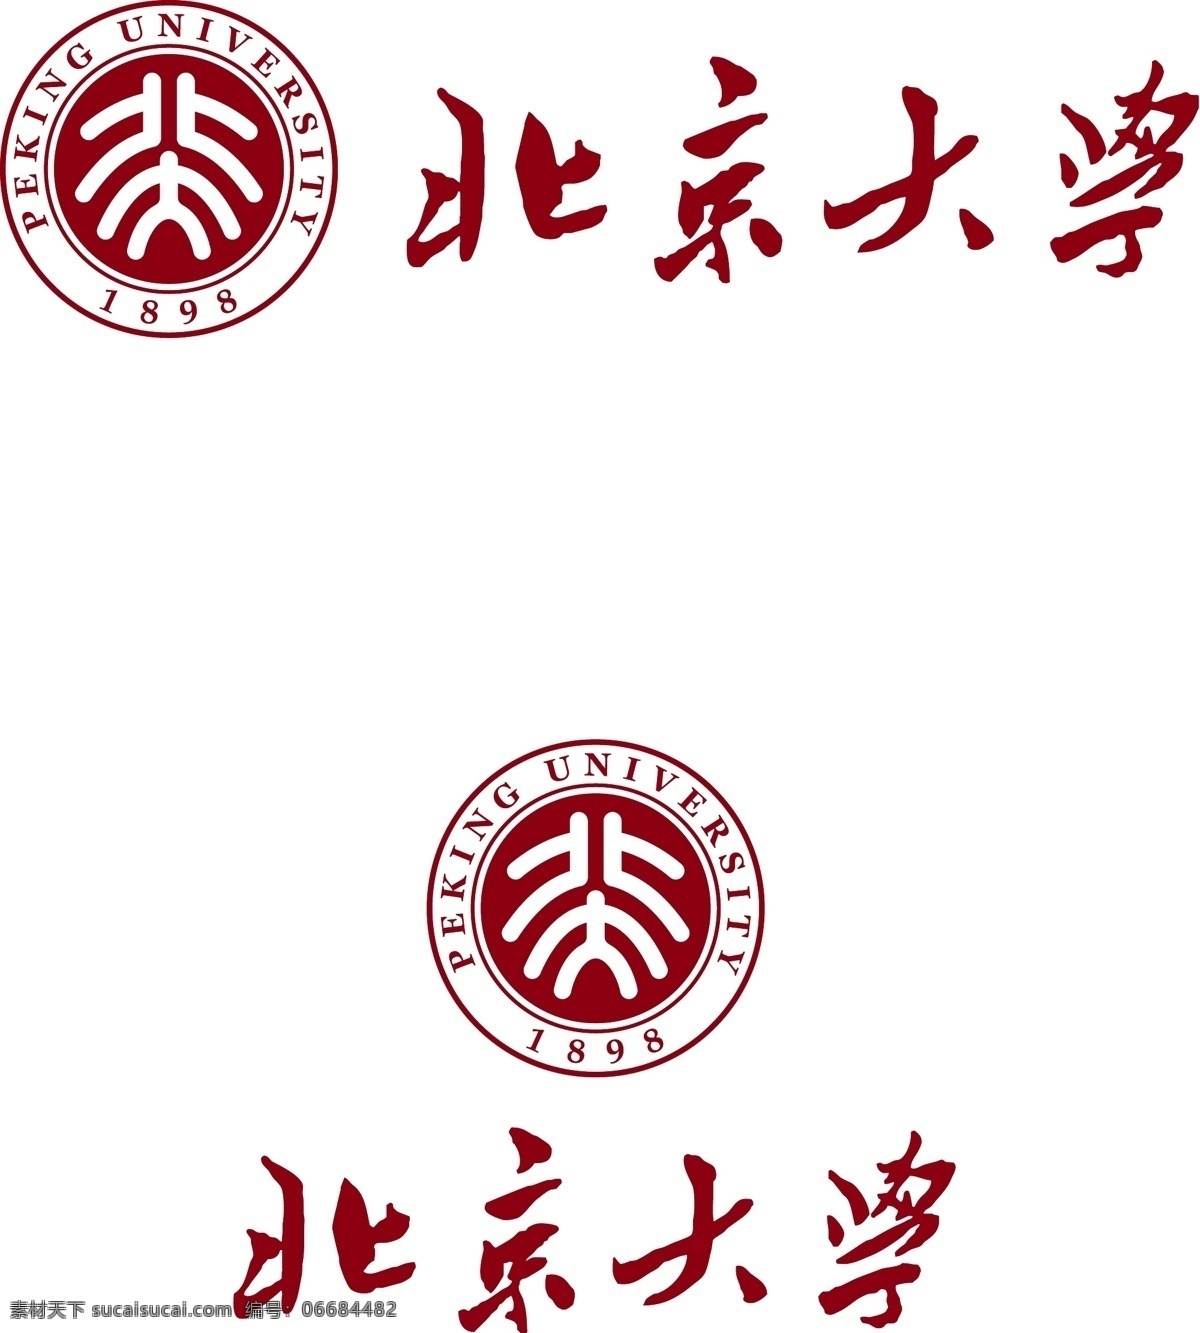 北京大学标识 北京大学 校徽 logo 北大 标识标志图标 矢量